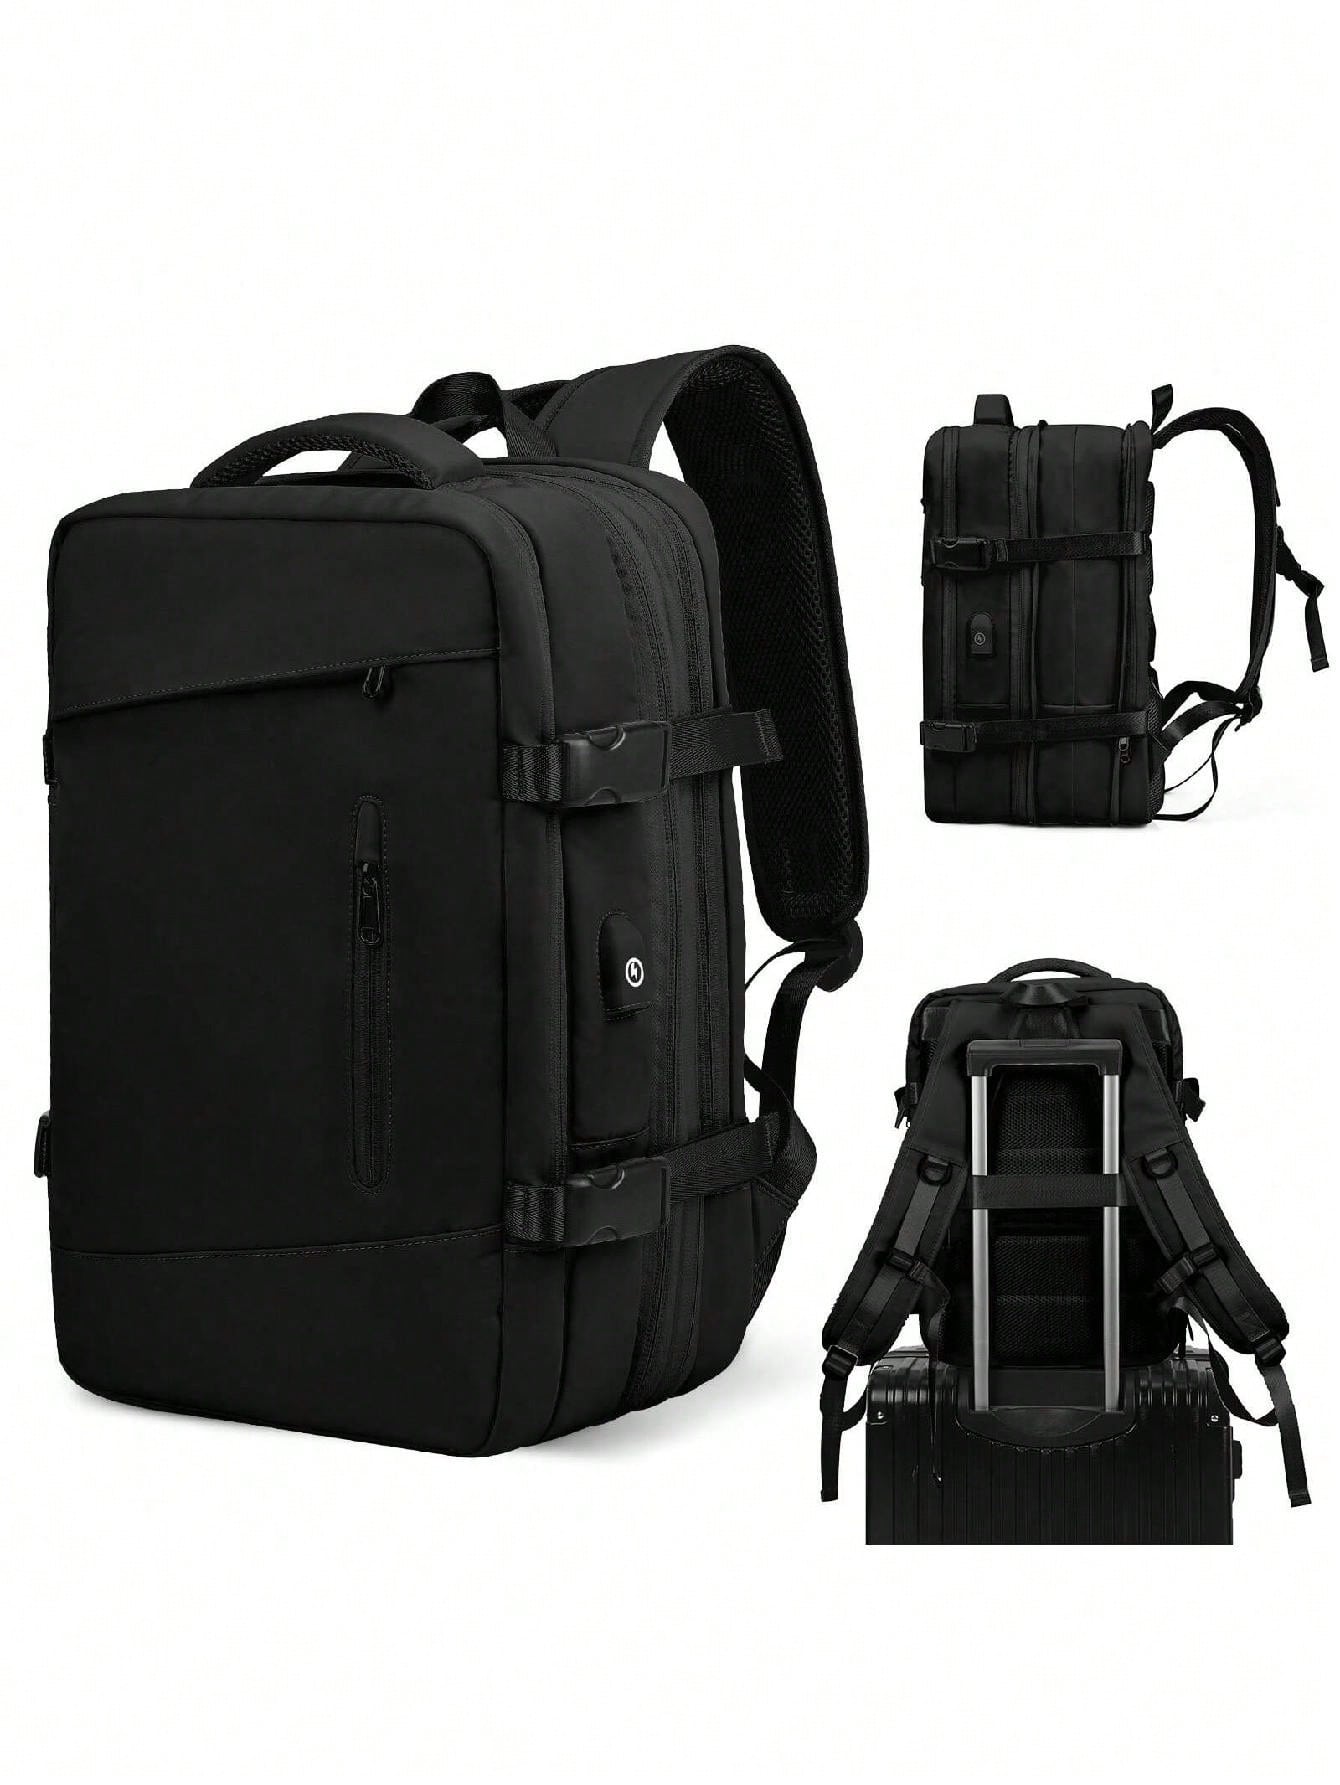 Мужской рюкзак с расширяемой вместимостью для деловых поездок, серый дорожный рюкзак большой вместимости черный